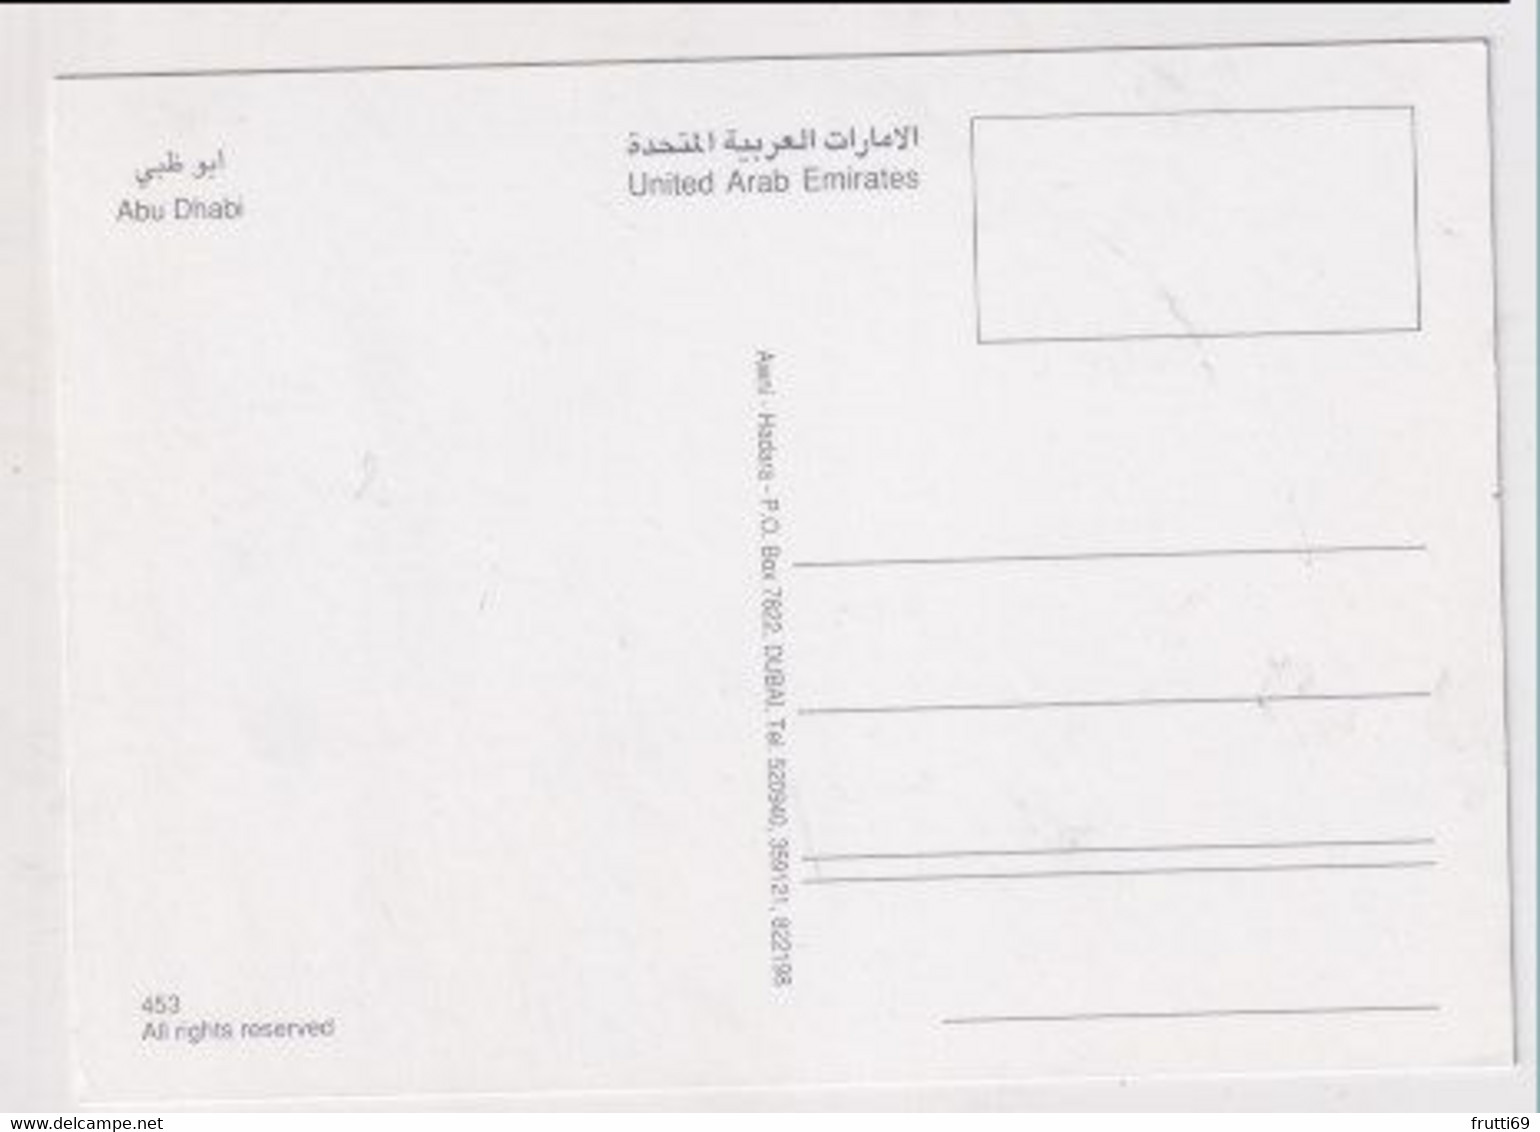 AK 029973 UNITED ARAB EMIRATES - Abu Dhabi - United Arab Emirates